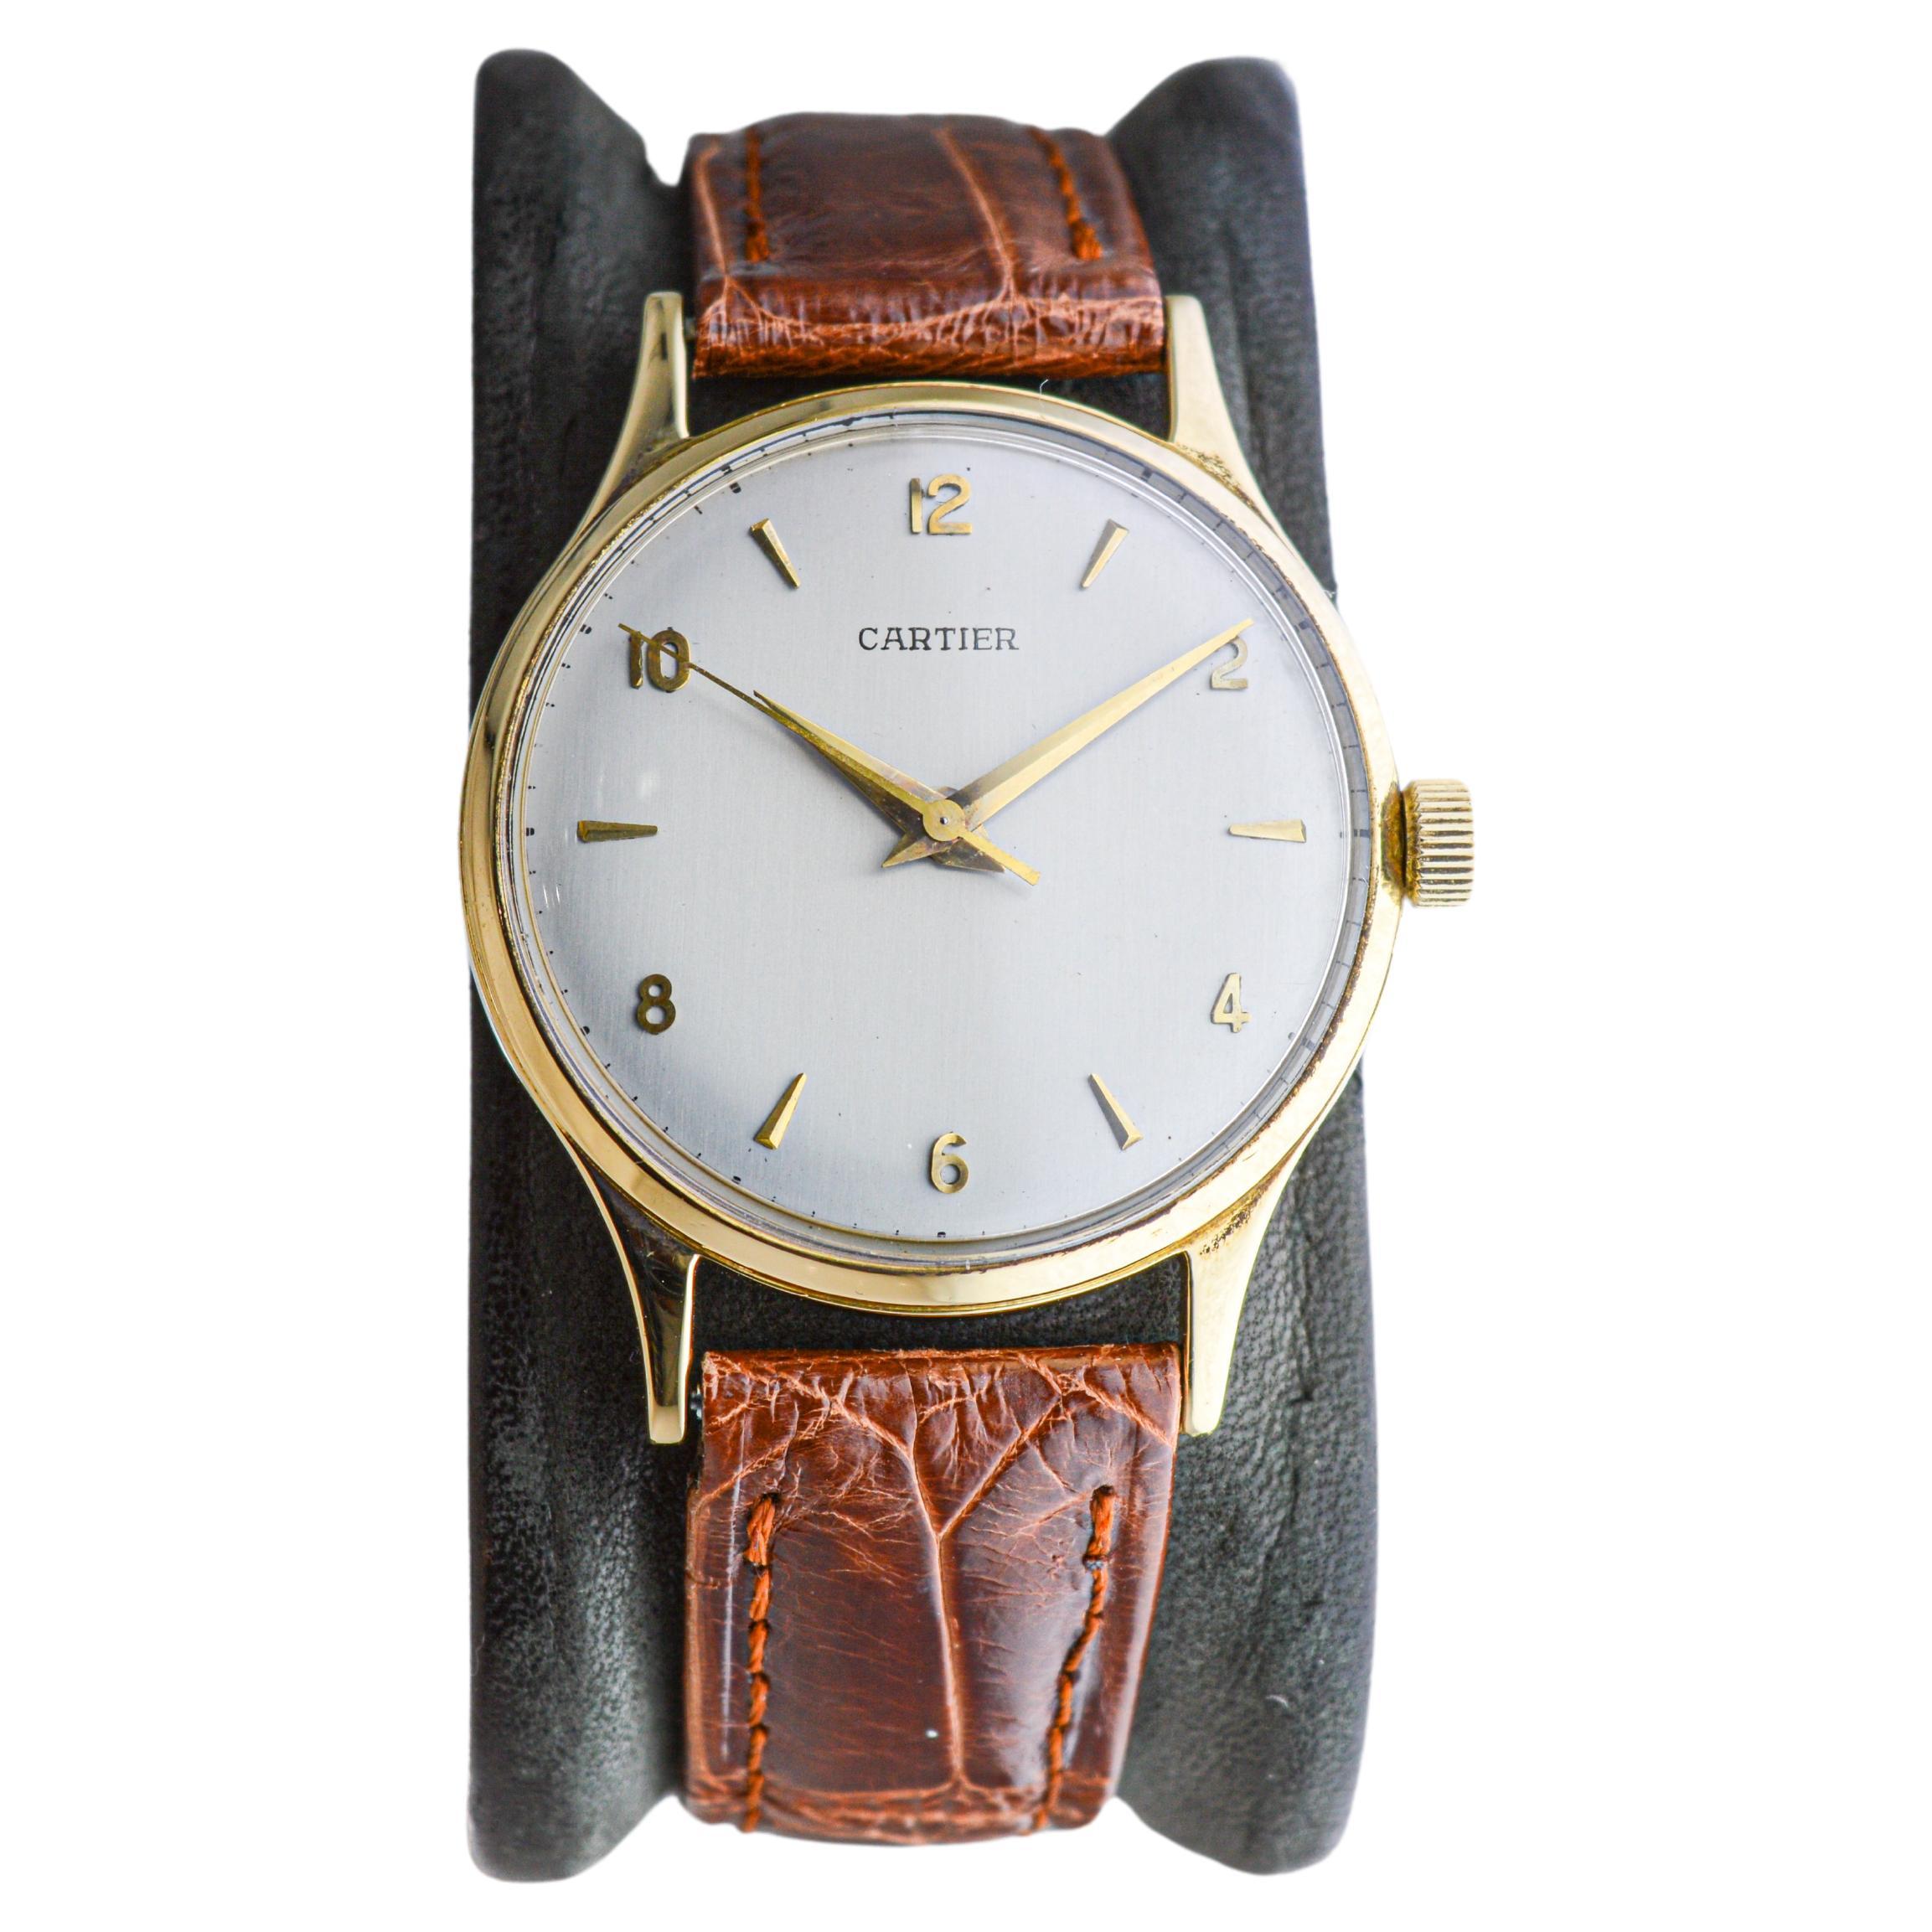 Cartier Paris 18Kt. Gold Calatrava Style Watch, from 1950's European Watch Co. 